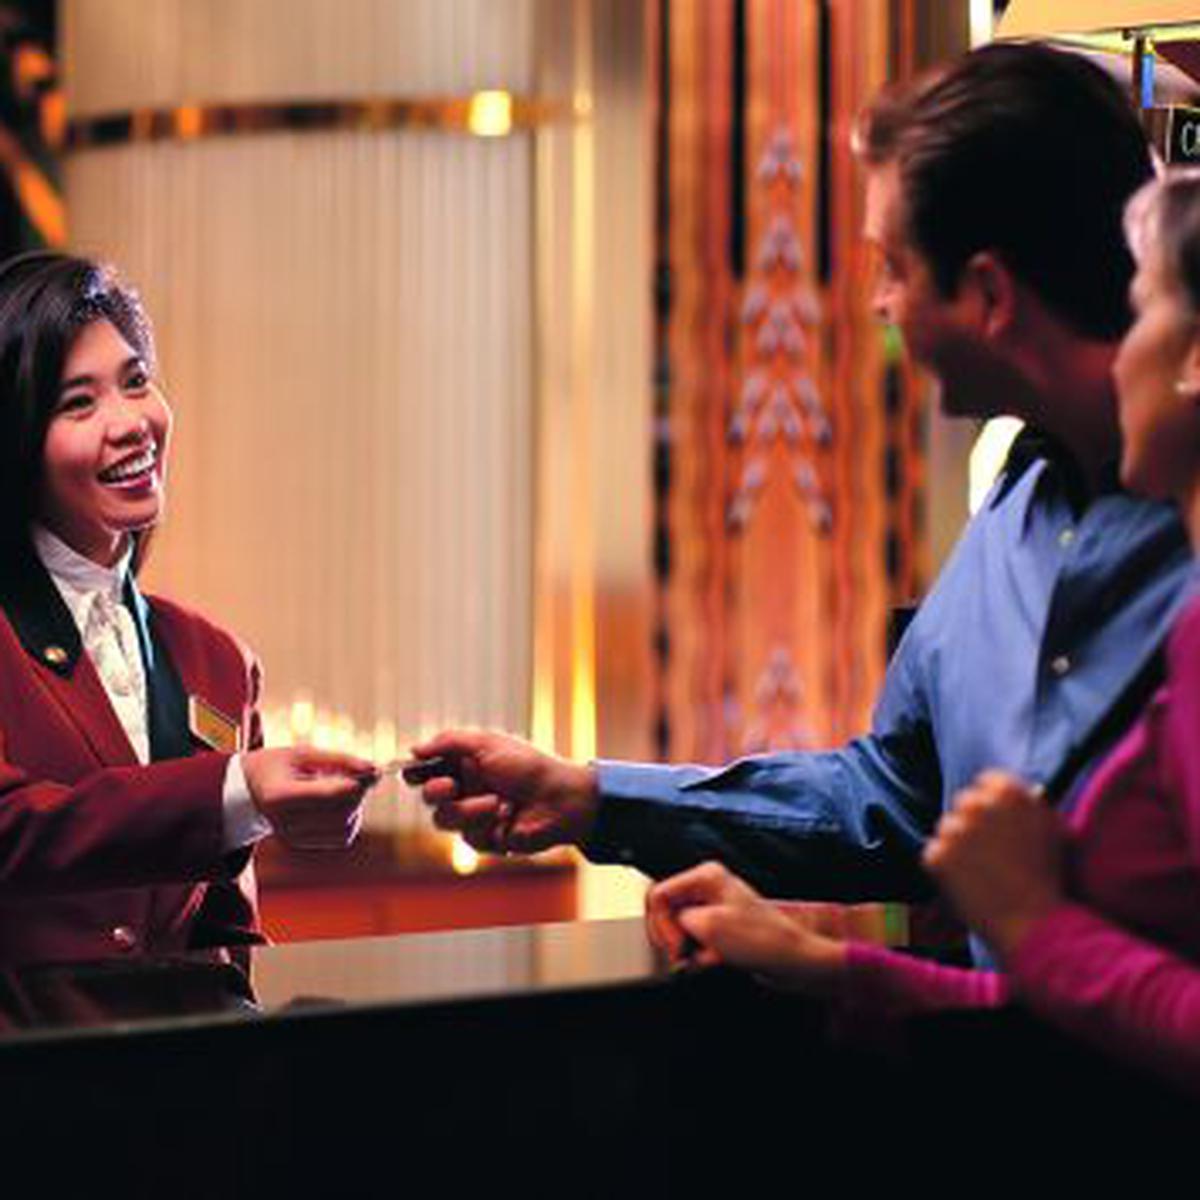 Hotelería y turismo, una carrera de servicio | VIDA | PERU21